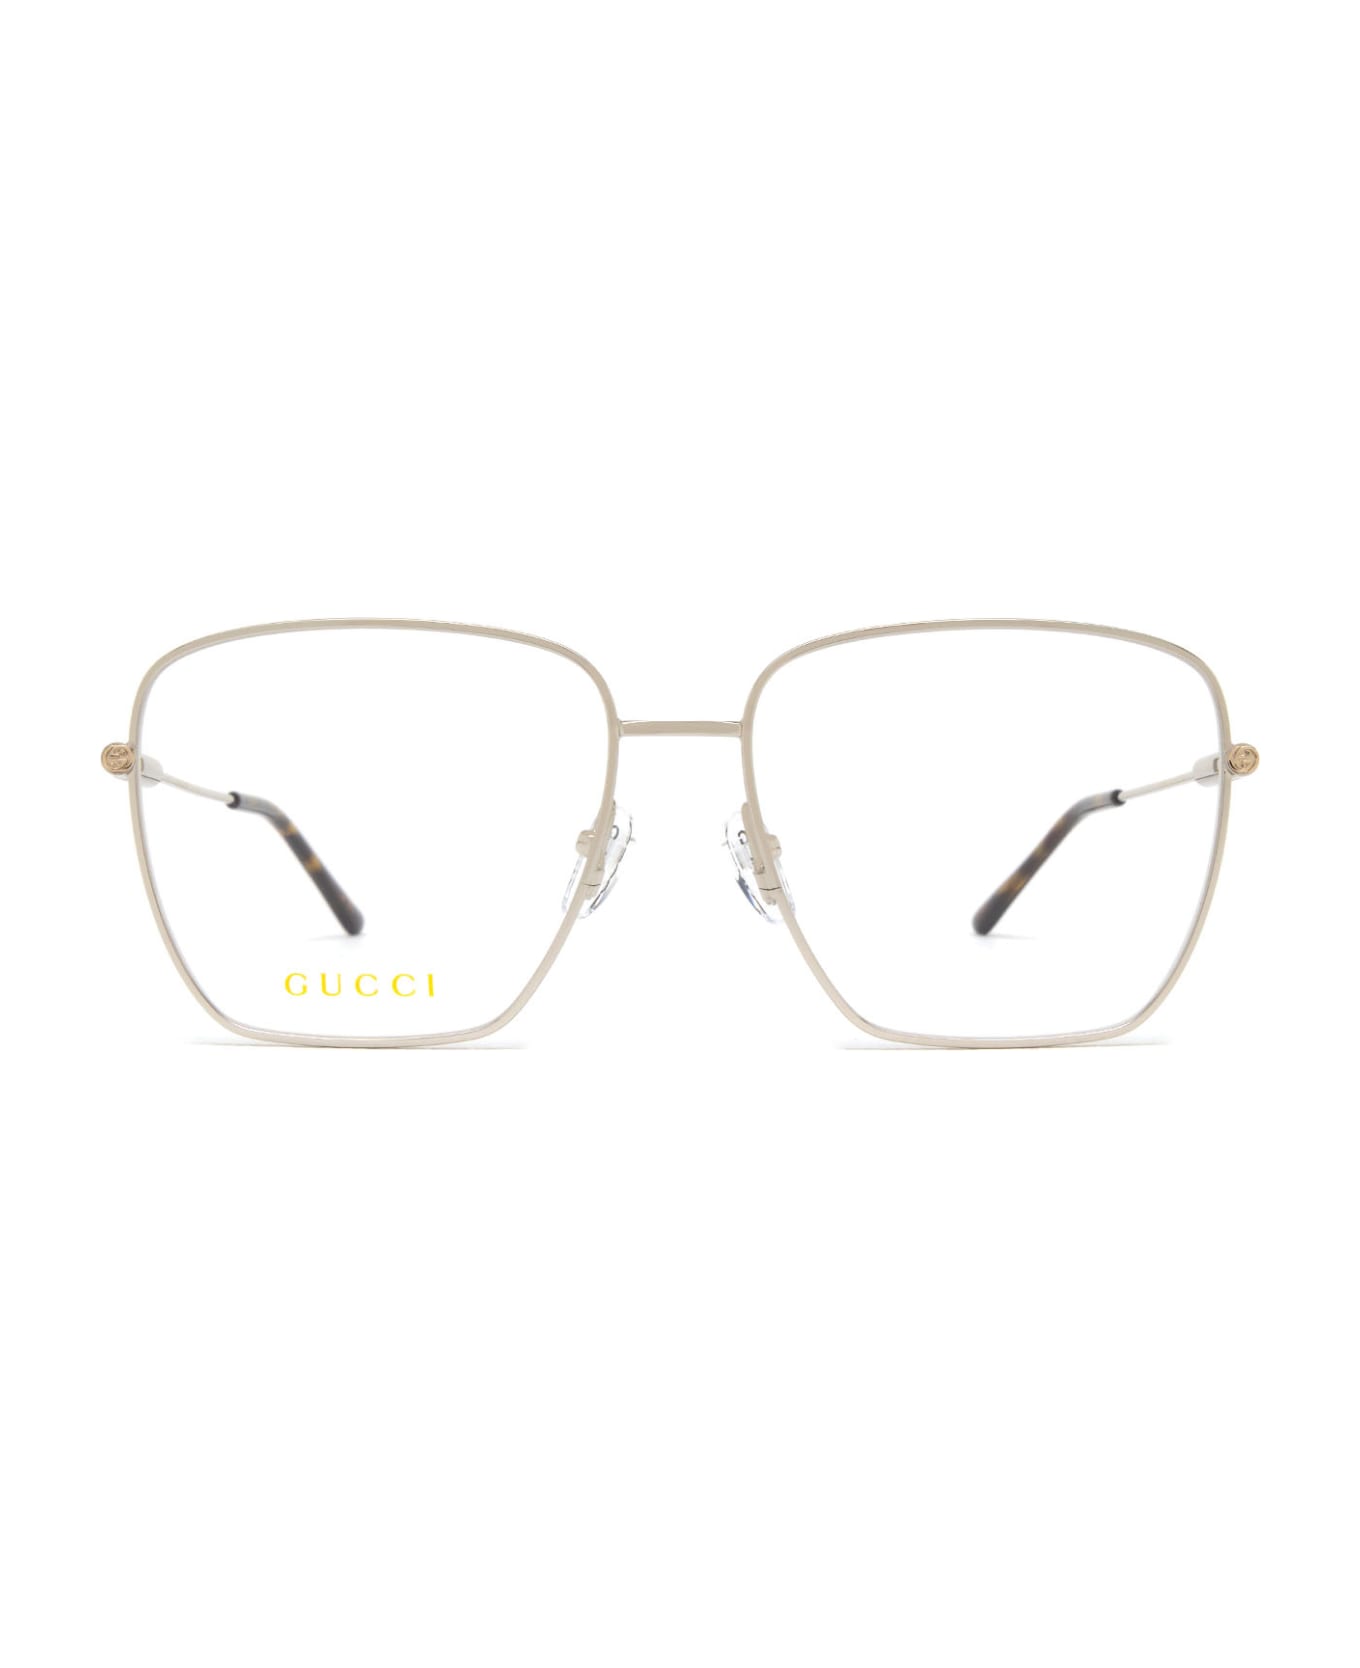 Gucci Eyewear Gg1414o Silver Glasses - Silver